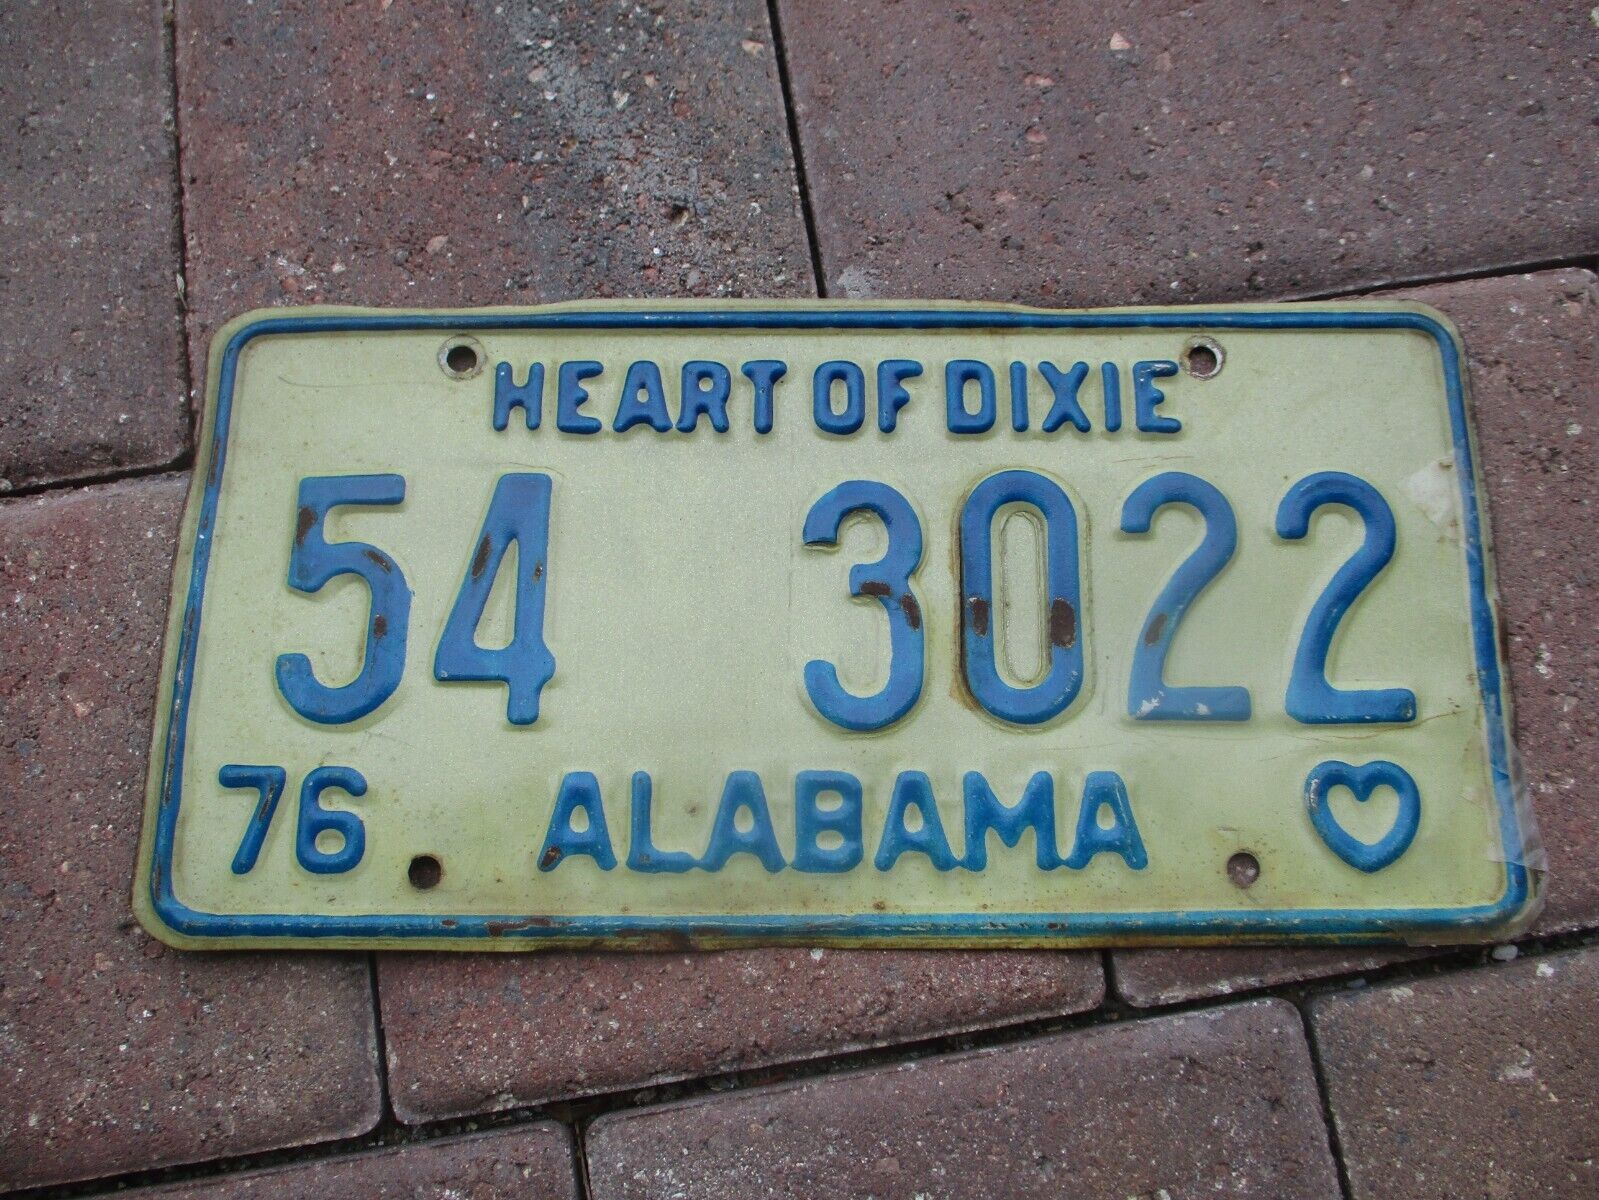 Alabama  1976  license plate   #  54  3022